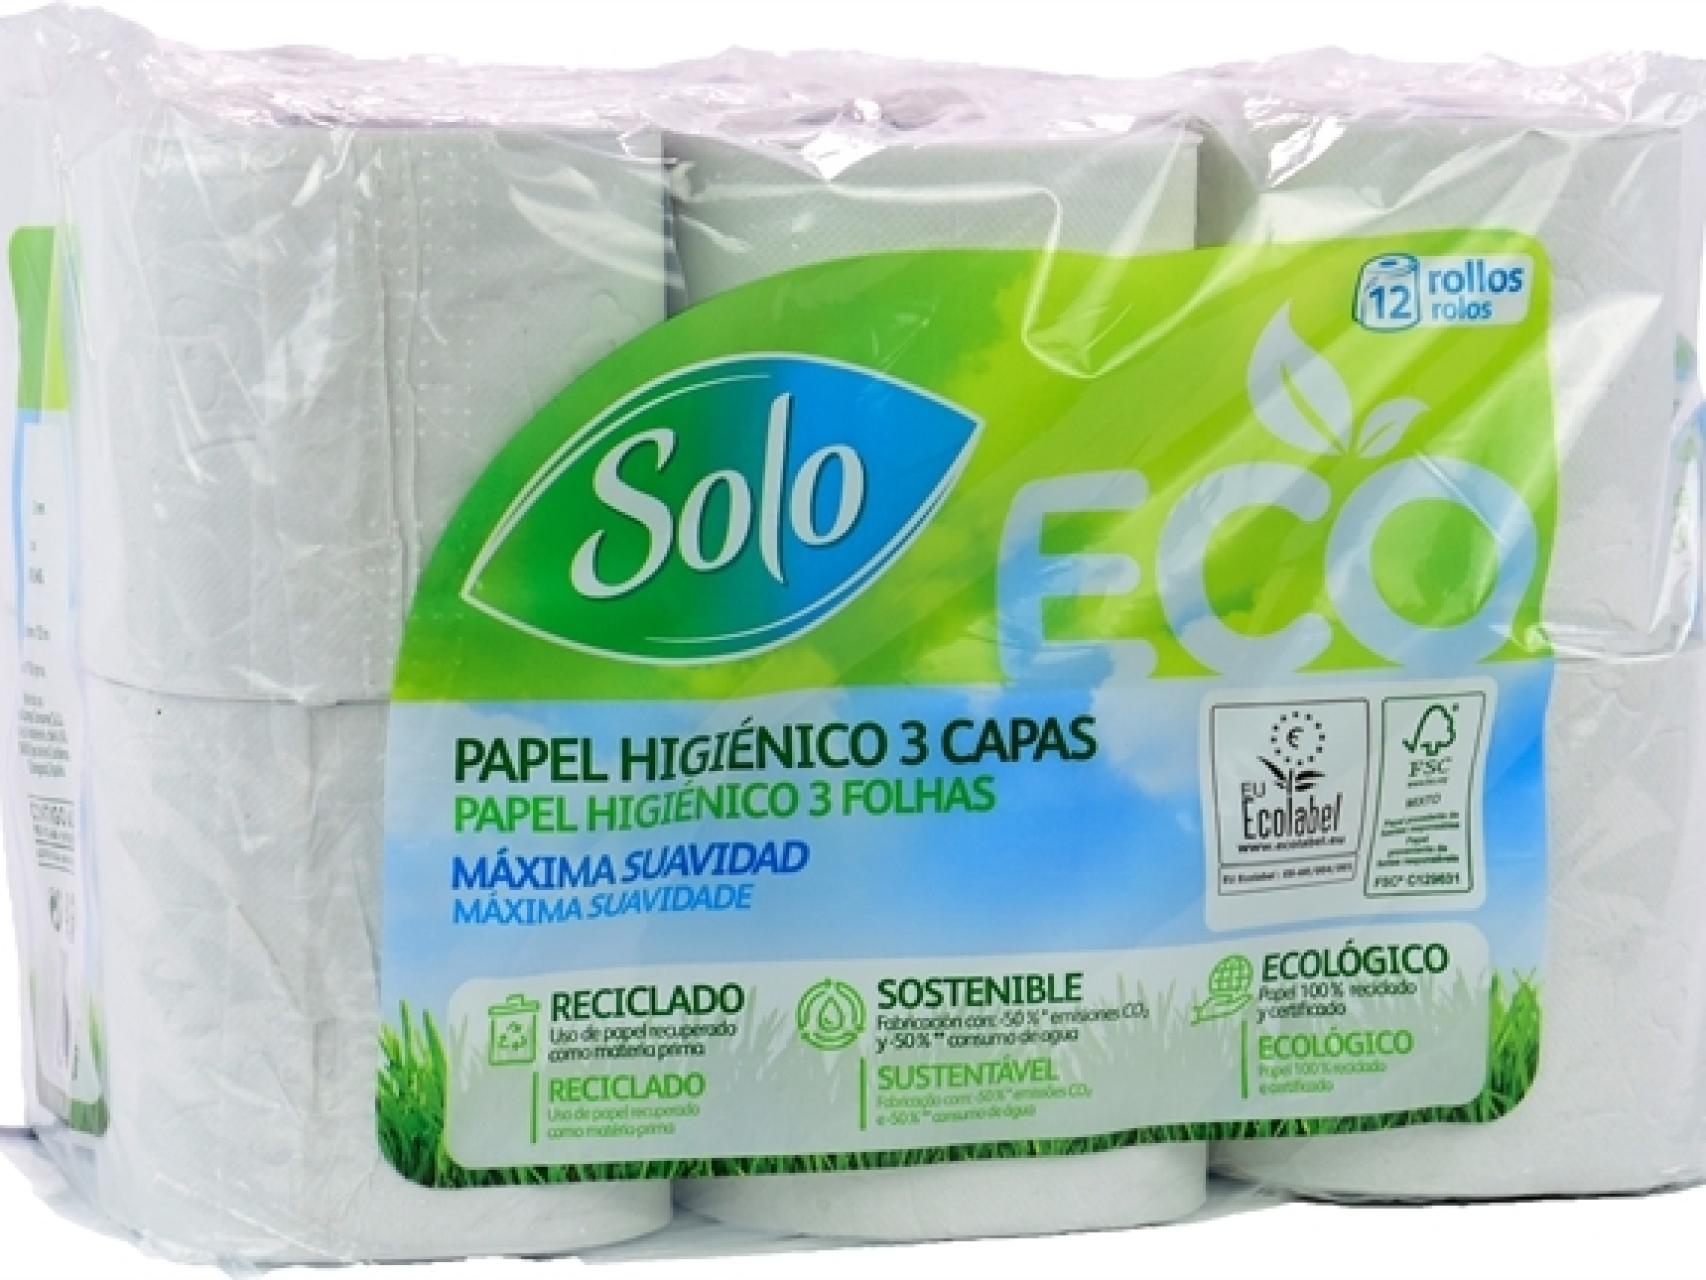 La OCU elige el mejor rollo de papel higiénico por menos de 4